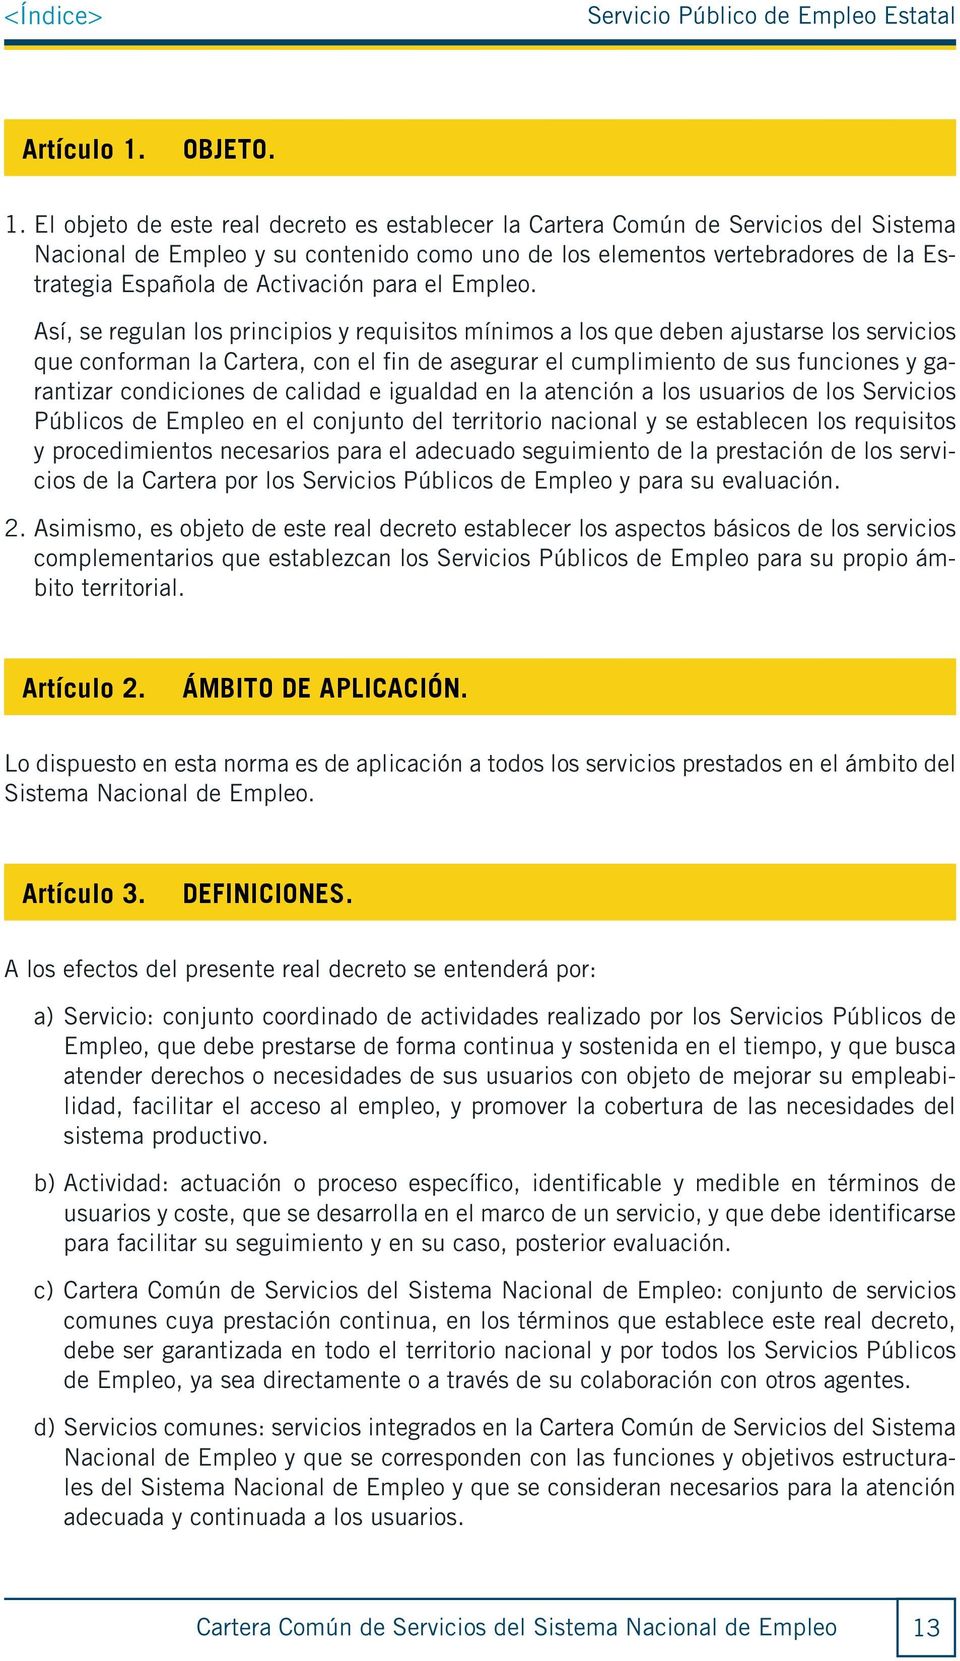 El objeto de este real decreto es establecer la Cartera Común de Servicios del Sistema Nacional de Empleo y su contenido como uno de los elementos vertebradores de la Estrategia Española de